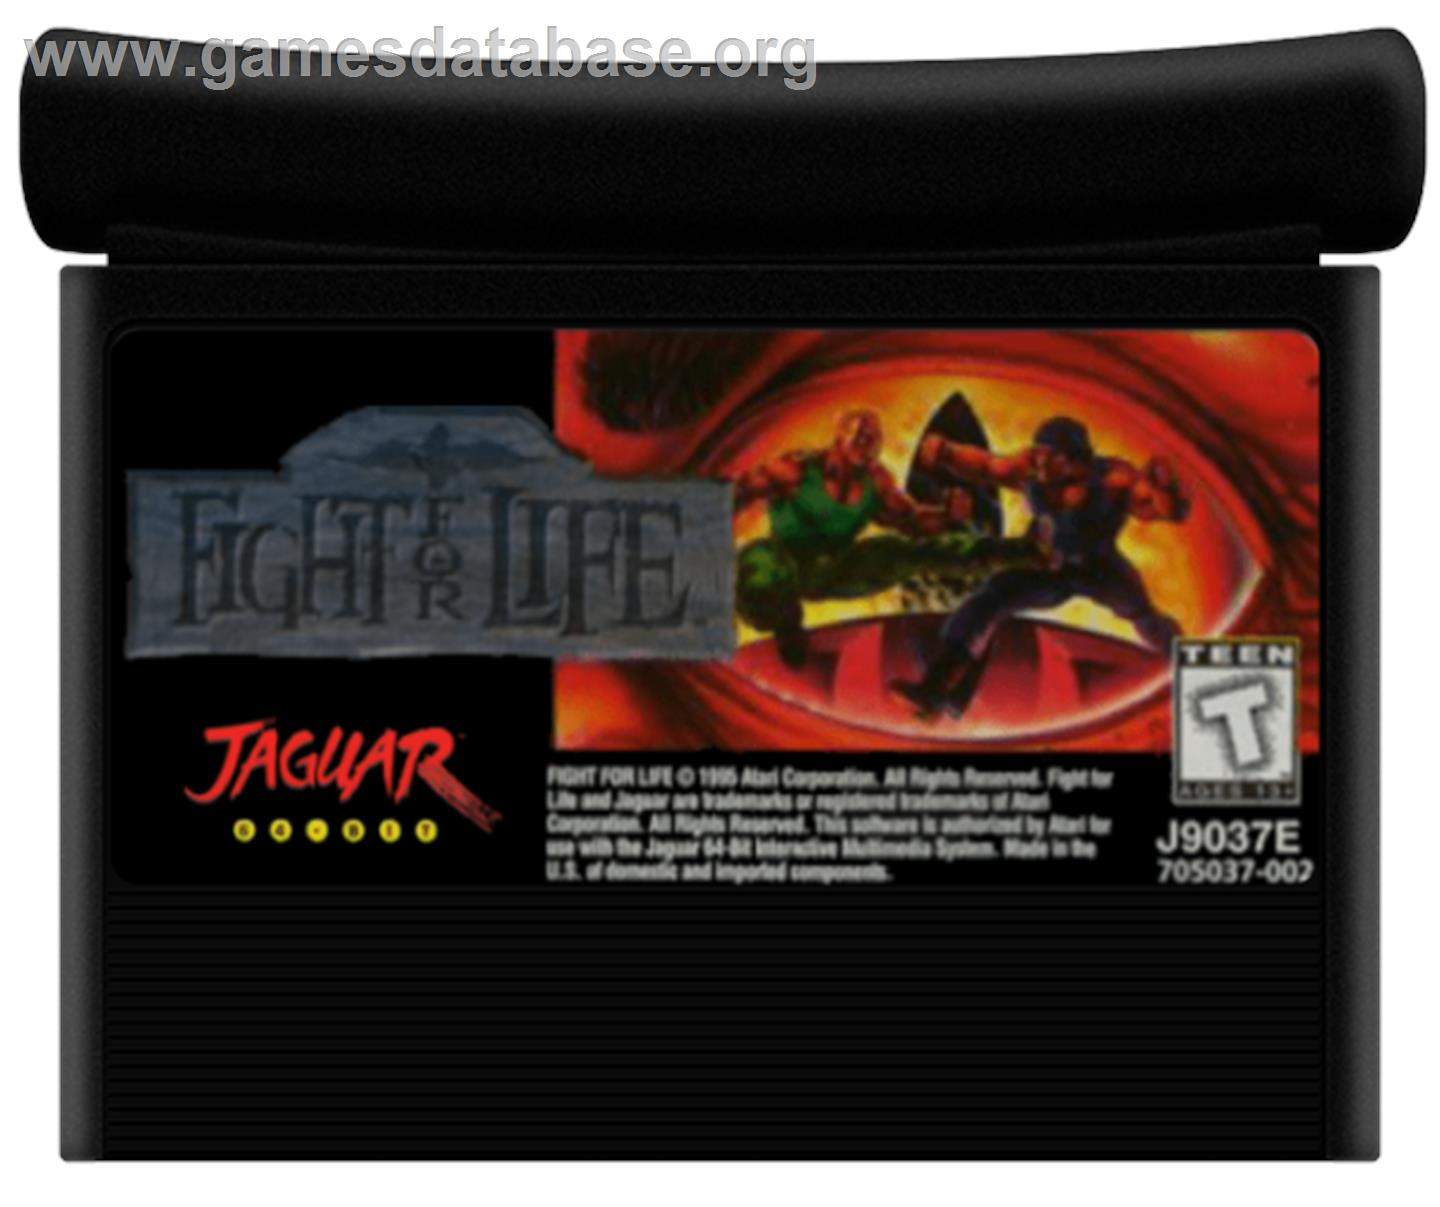 Fight For Life - Atari Jaguar - Artwork - Cartridge